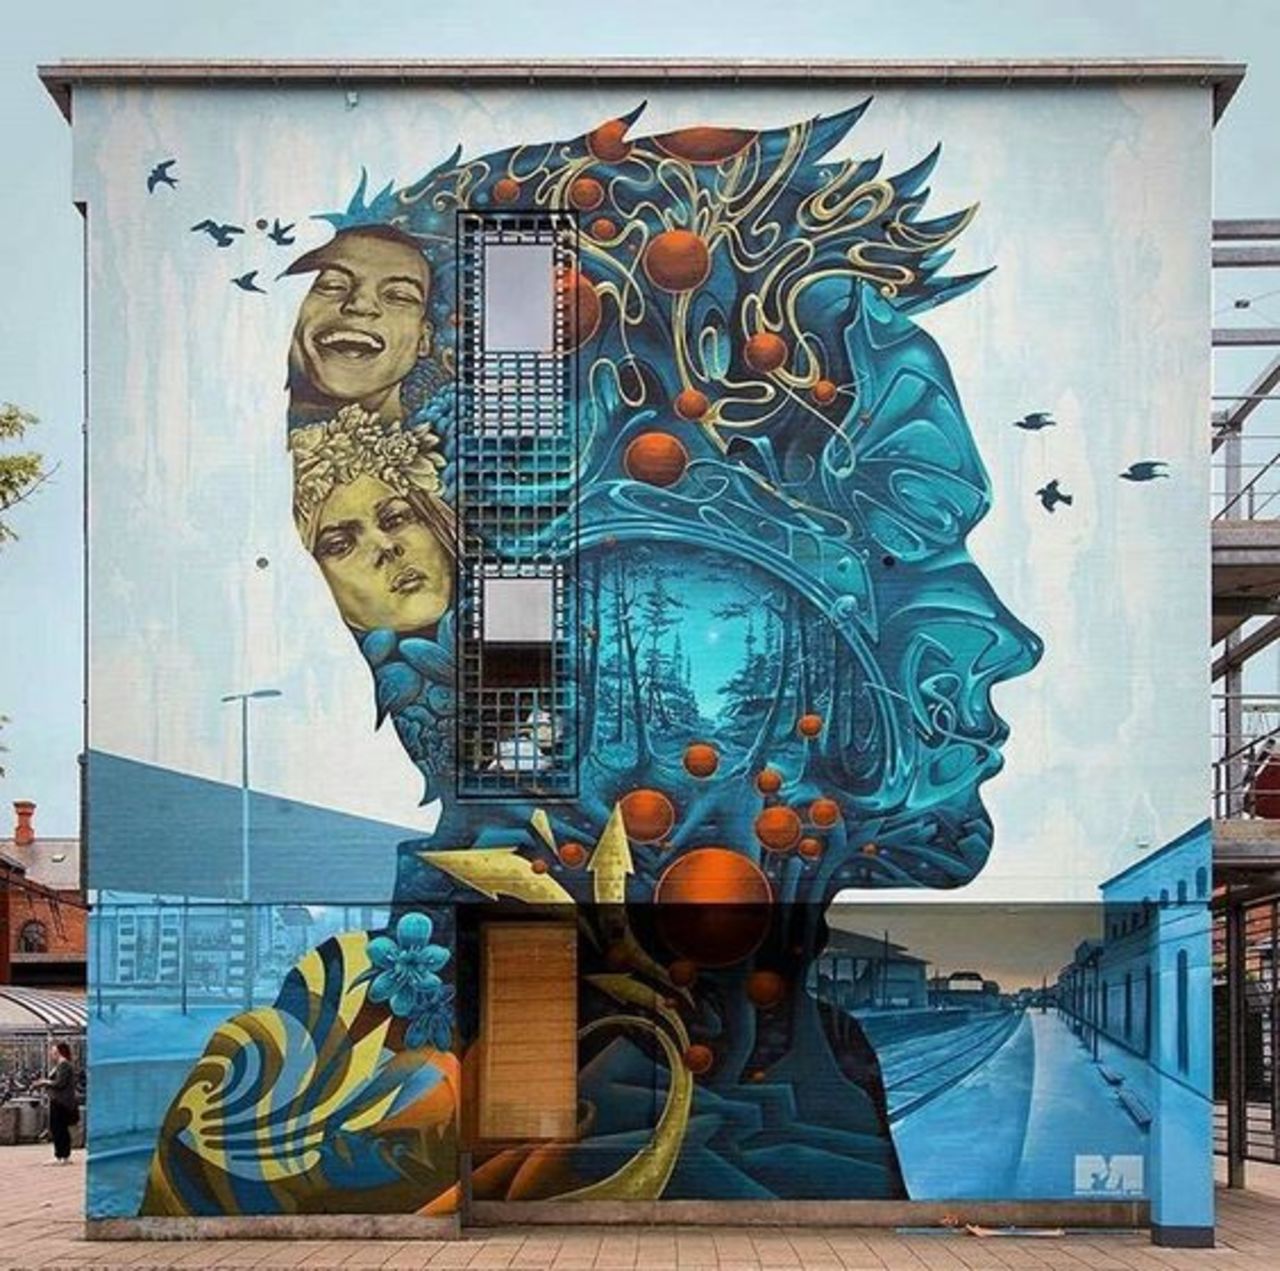 ... the world inside. Art by Nameoner e Michael Wisniewski in Slagelse, Denmark #StreetArt #Art #Human #Inside #memories #Graffiti #Mural #UrbanArt https://t.co/6dGg9m1oYD